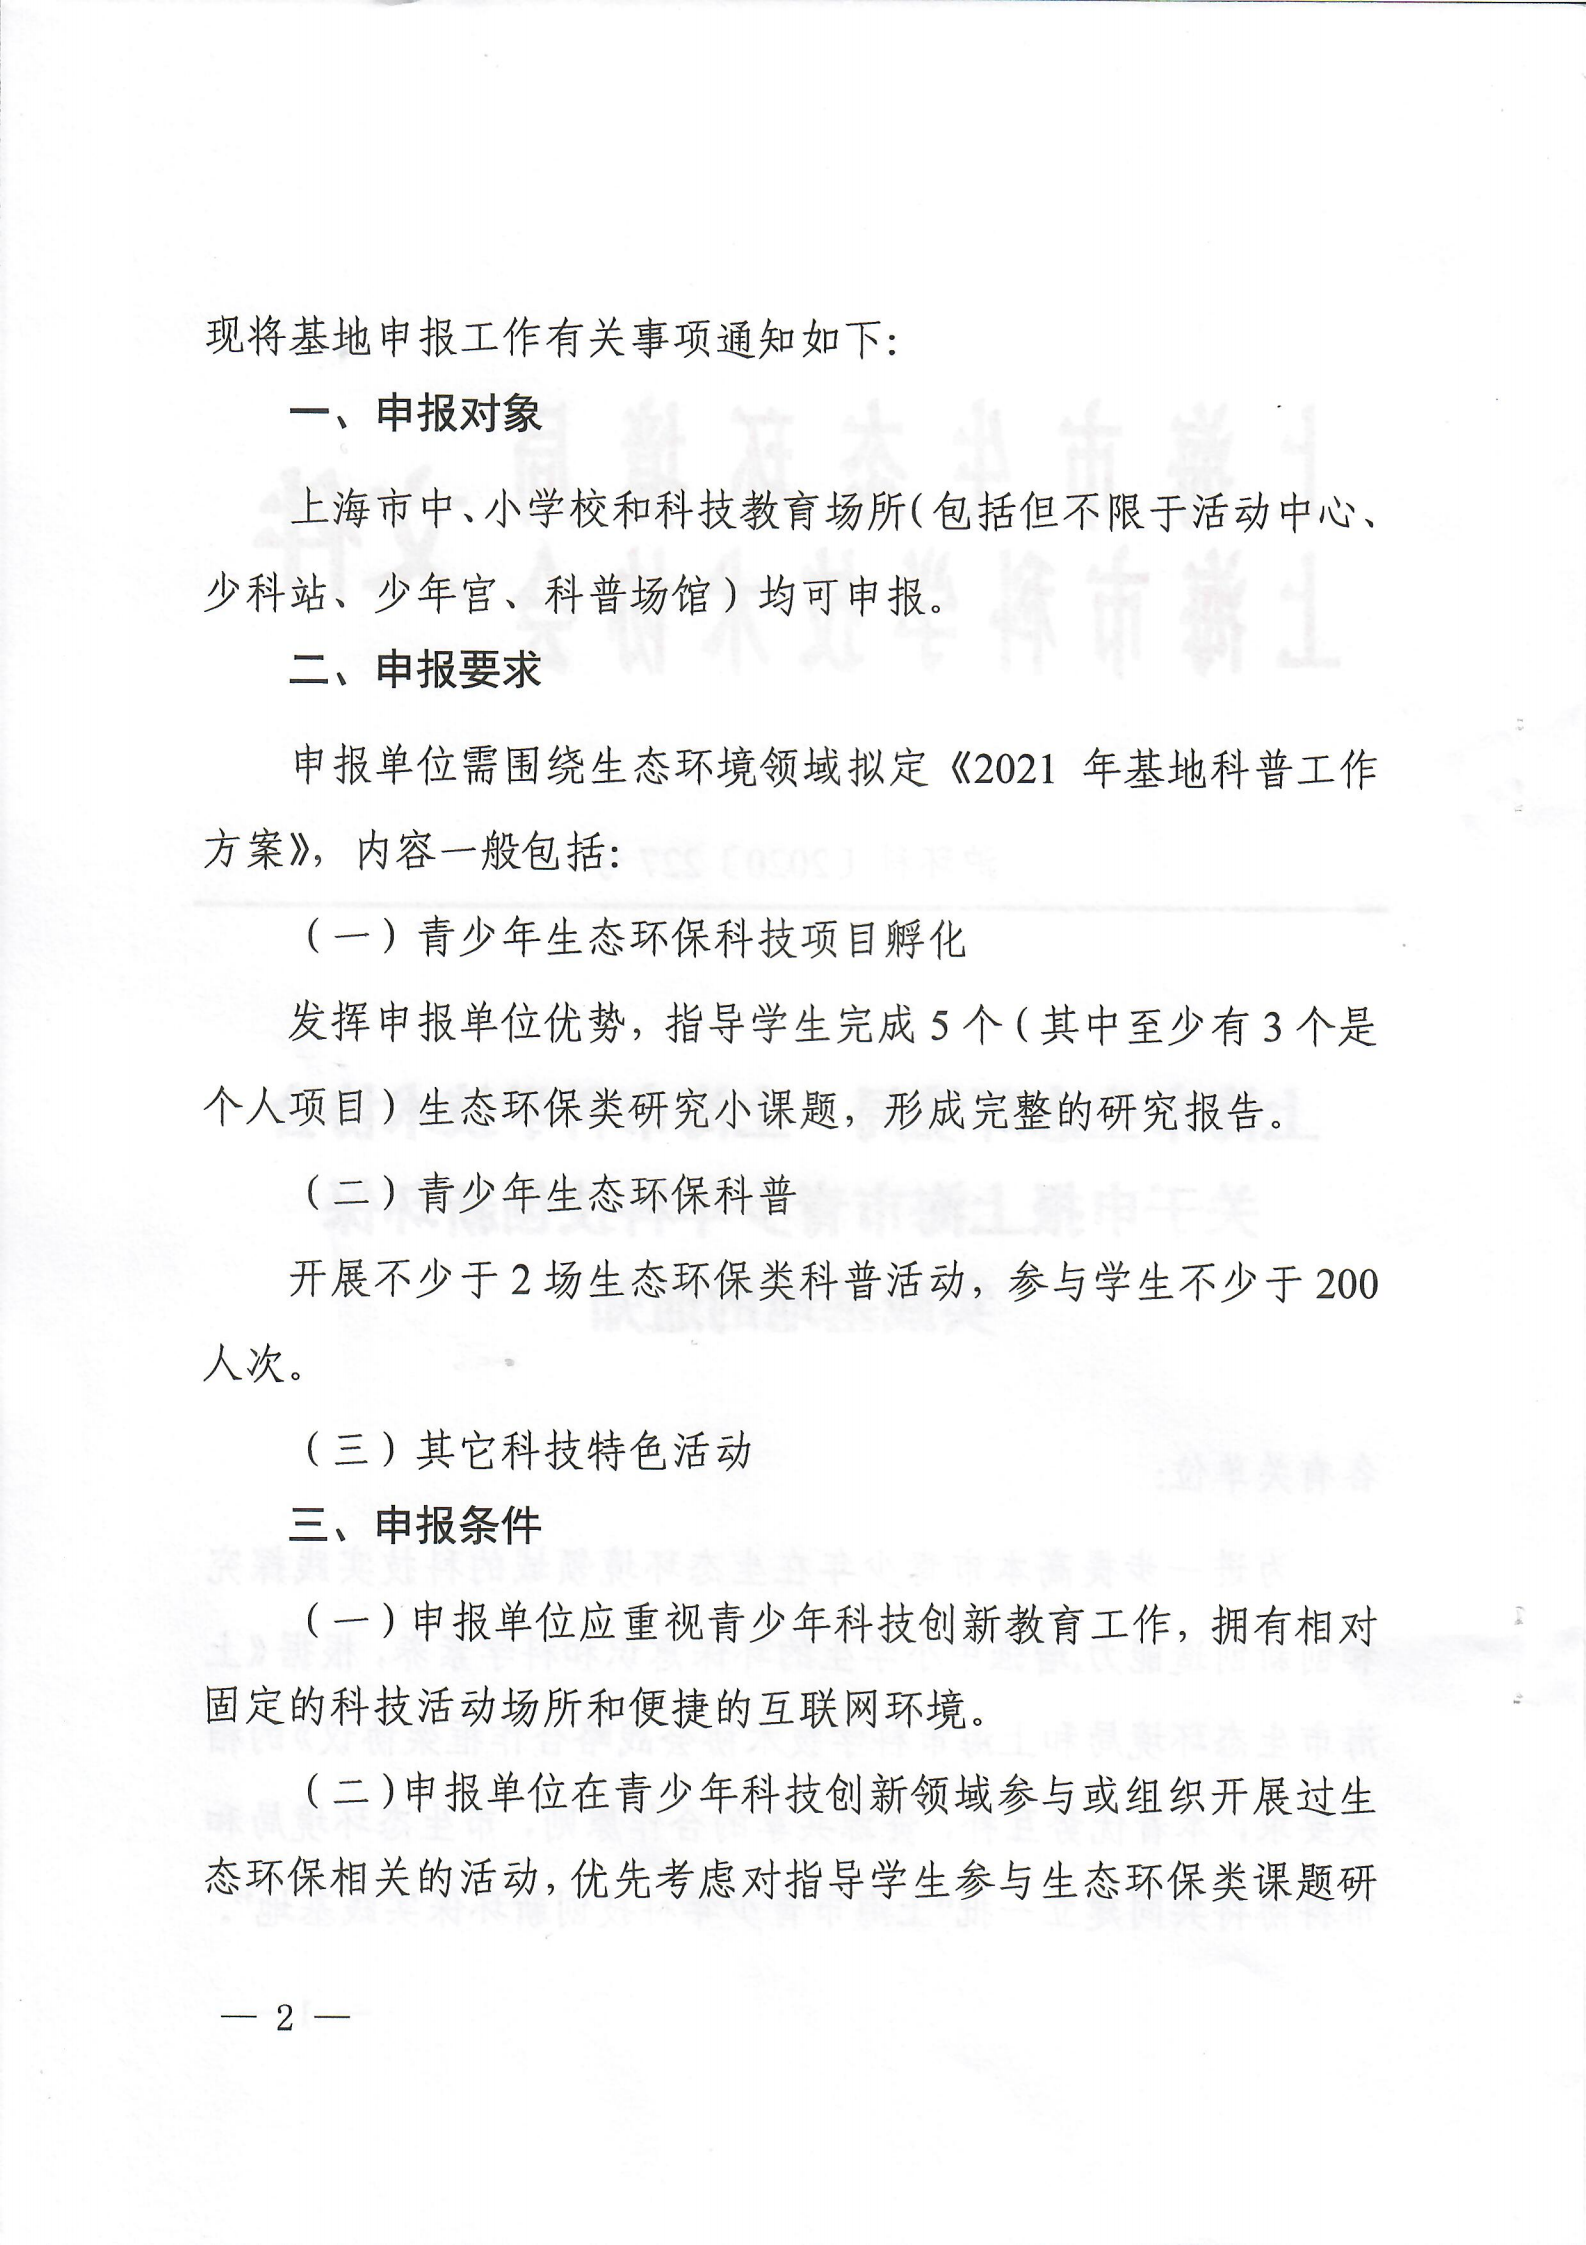 关于申报上海市青少年科技创新环保实践基地的通知扫描版_01.png